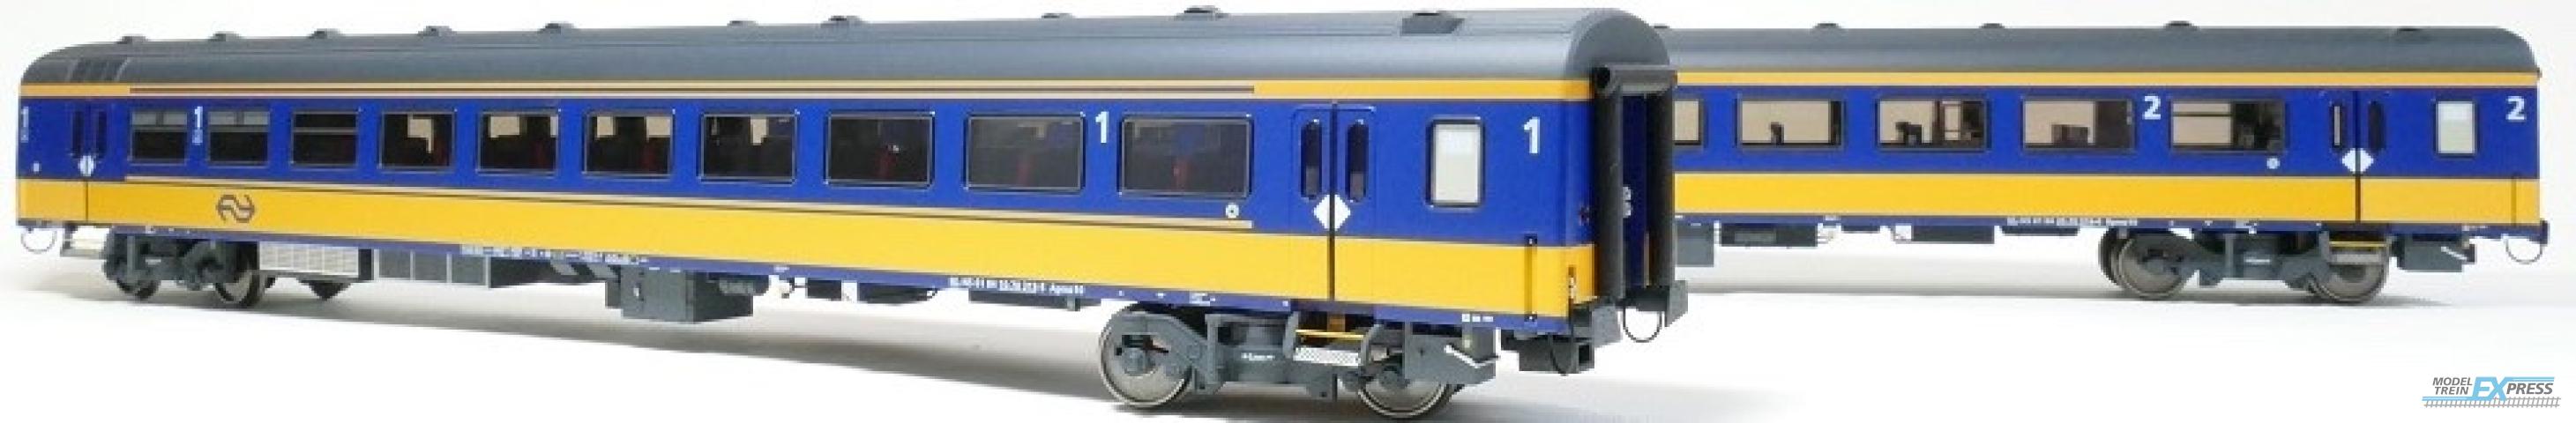 Exact-train 11002 2er-Set NS ICRm Den Haag -Eindhoven für den Inlandseinsatz Reisezugwagen Bpmz10 und Reisezugwagen Apmz10 ( Neue Farbe Gelb / Blau), Ep. VI